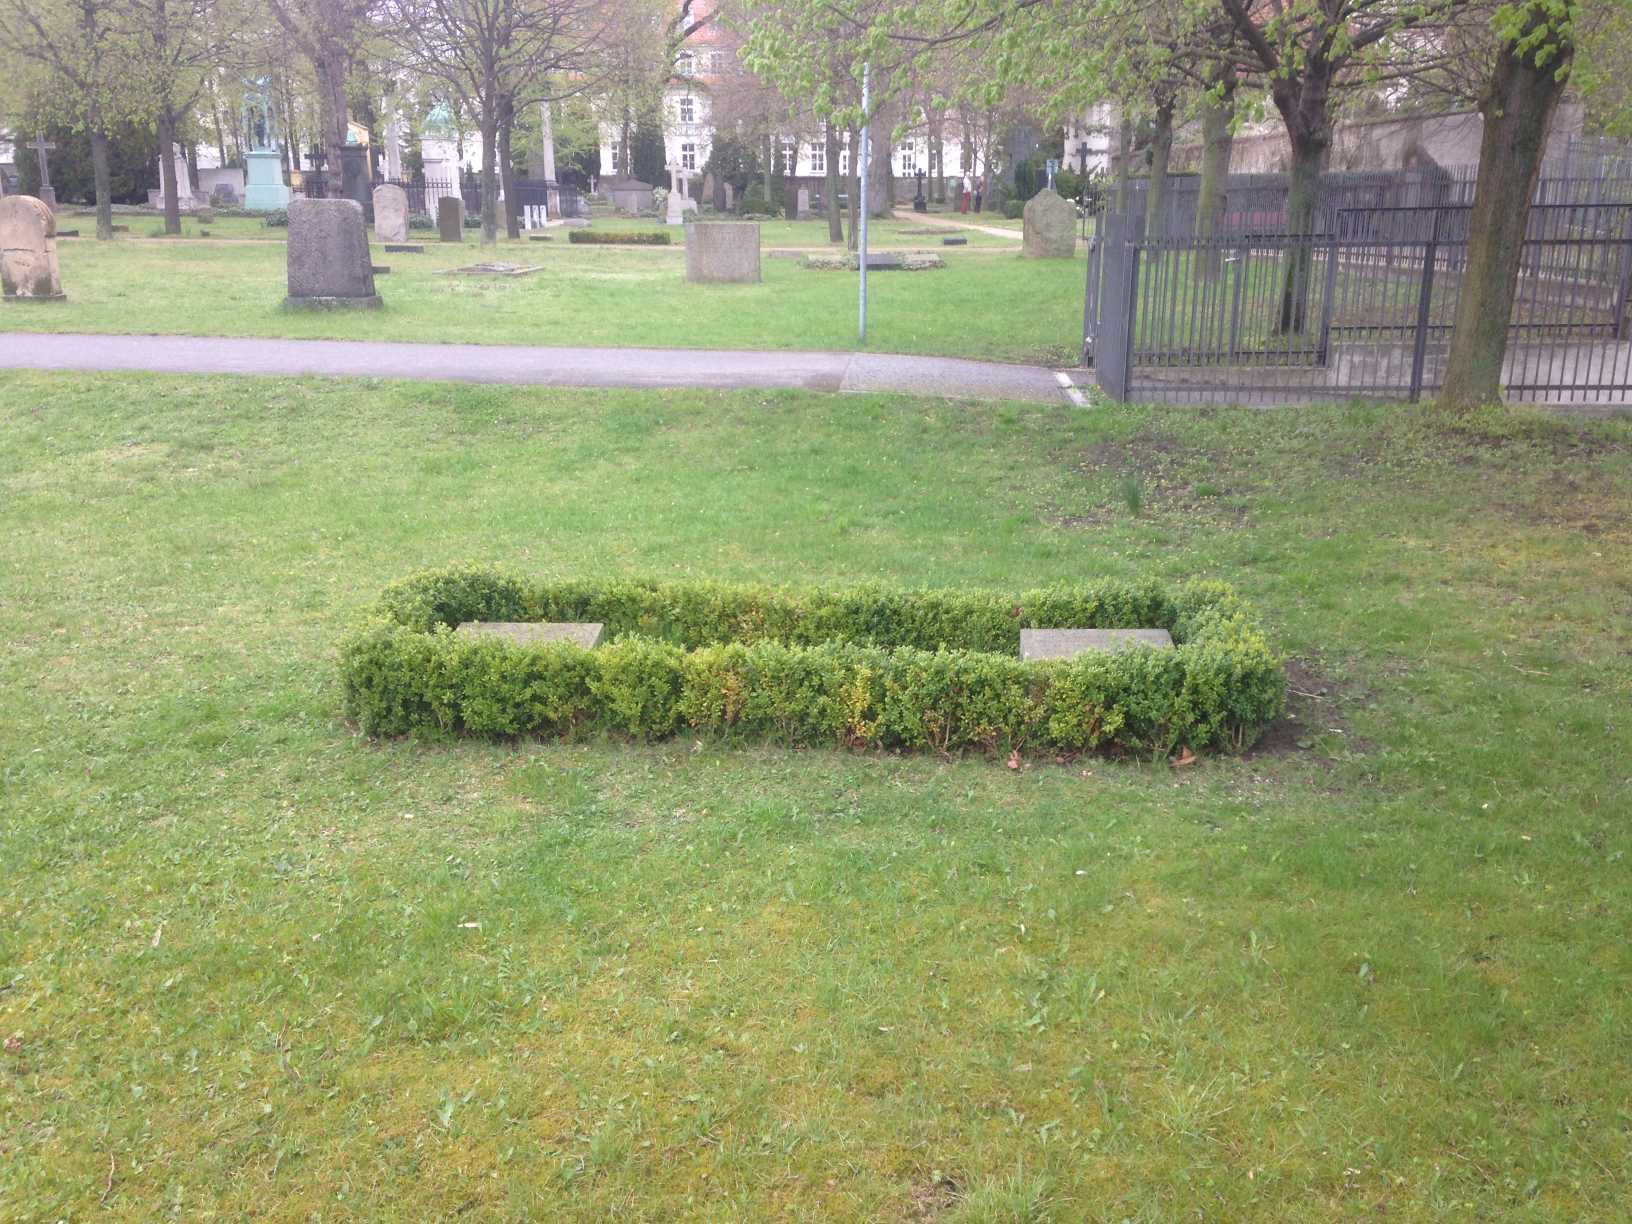 Restitutionsgrabstein August von Arnim, Invalidenfriedhof Berlin